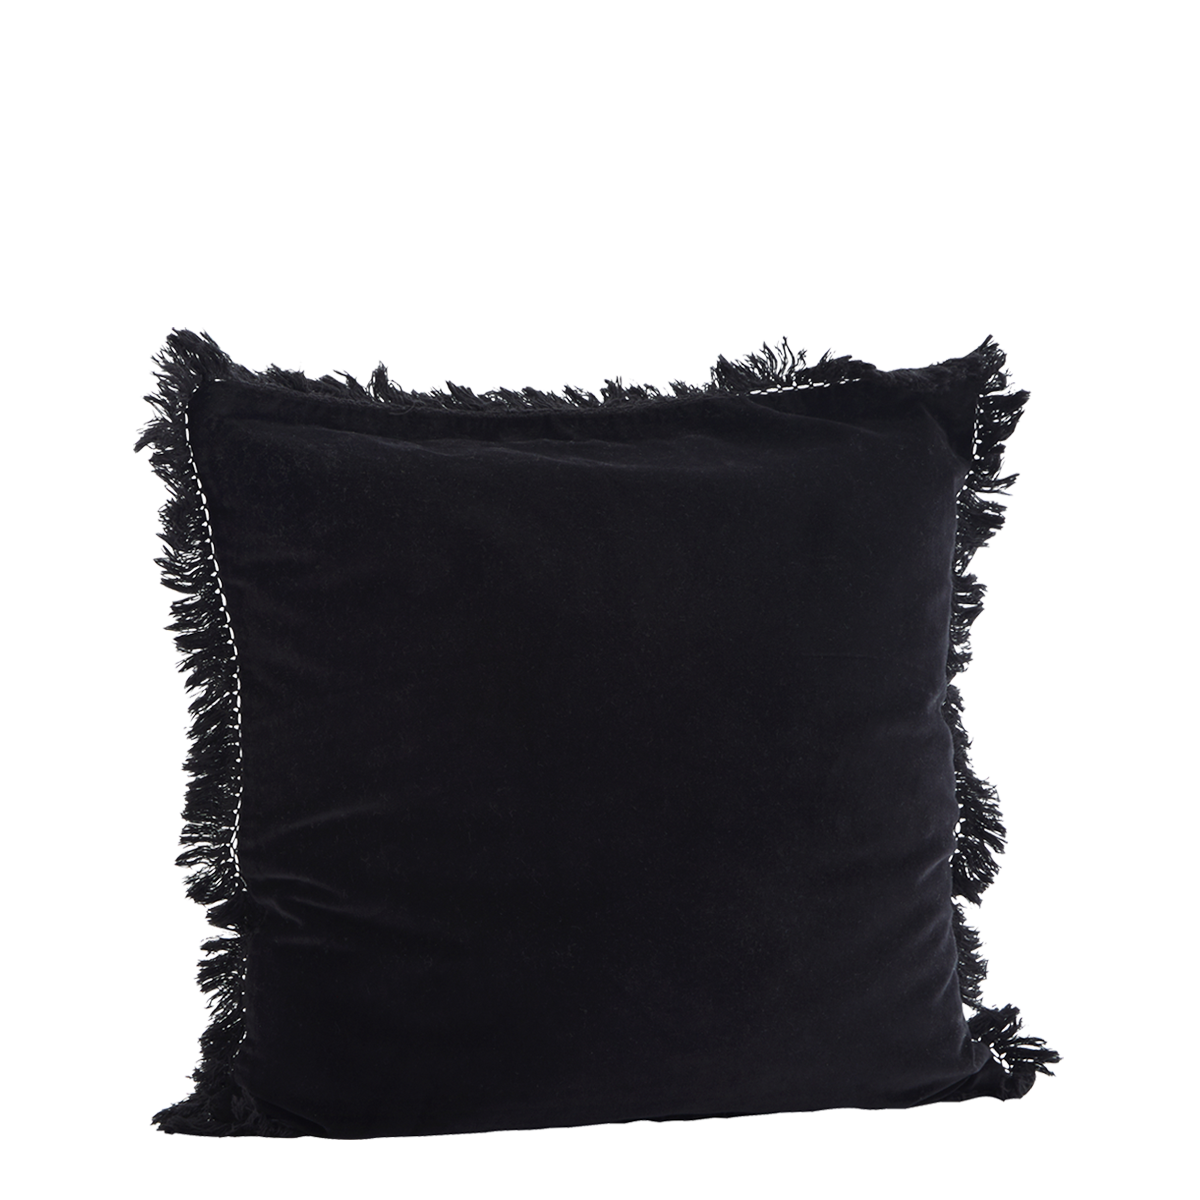 Velvet cushion cover w/ fringes